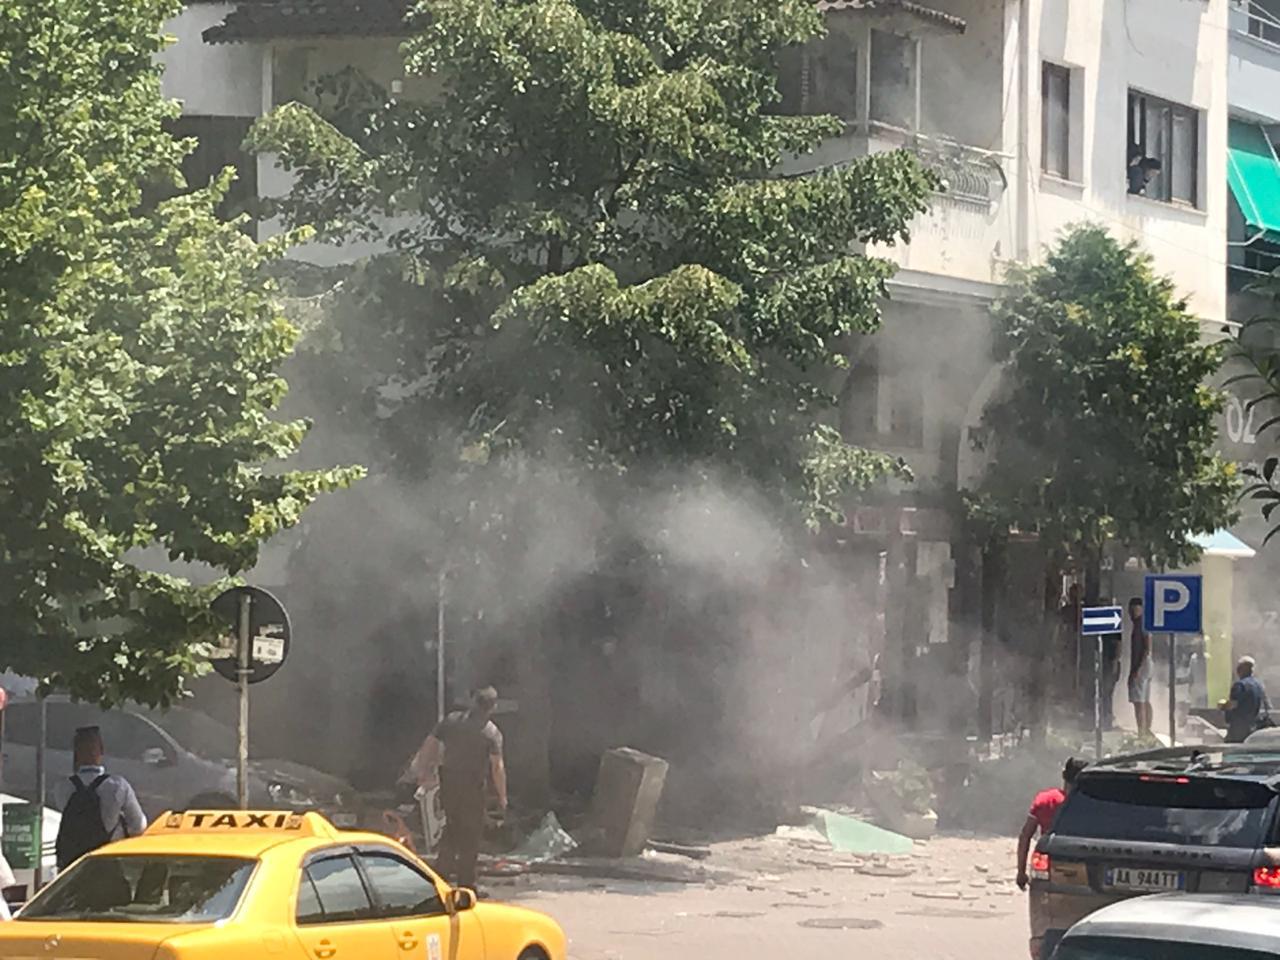 Shpërthim i fuqishëm në zonën e ish-bllokut në Tiranë, plagosen dy persona